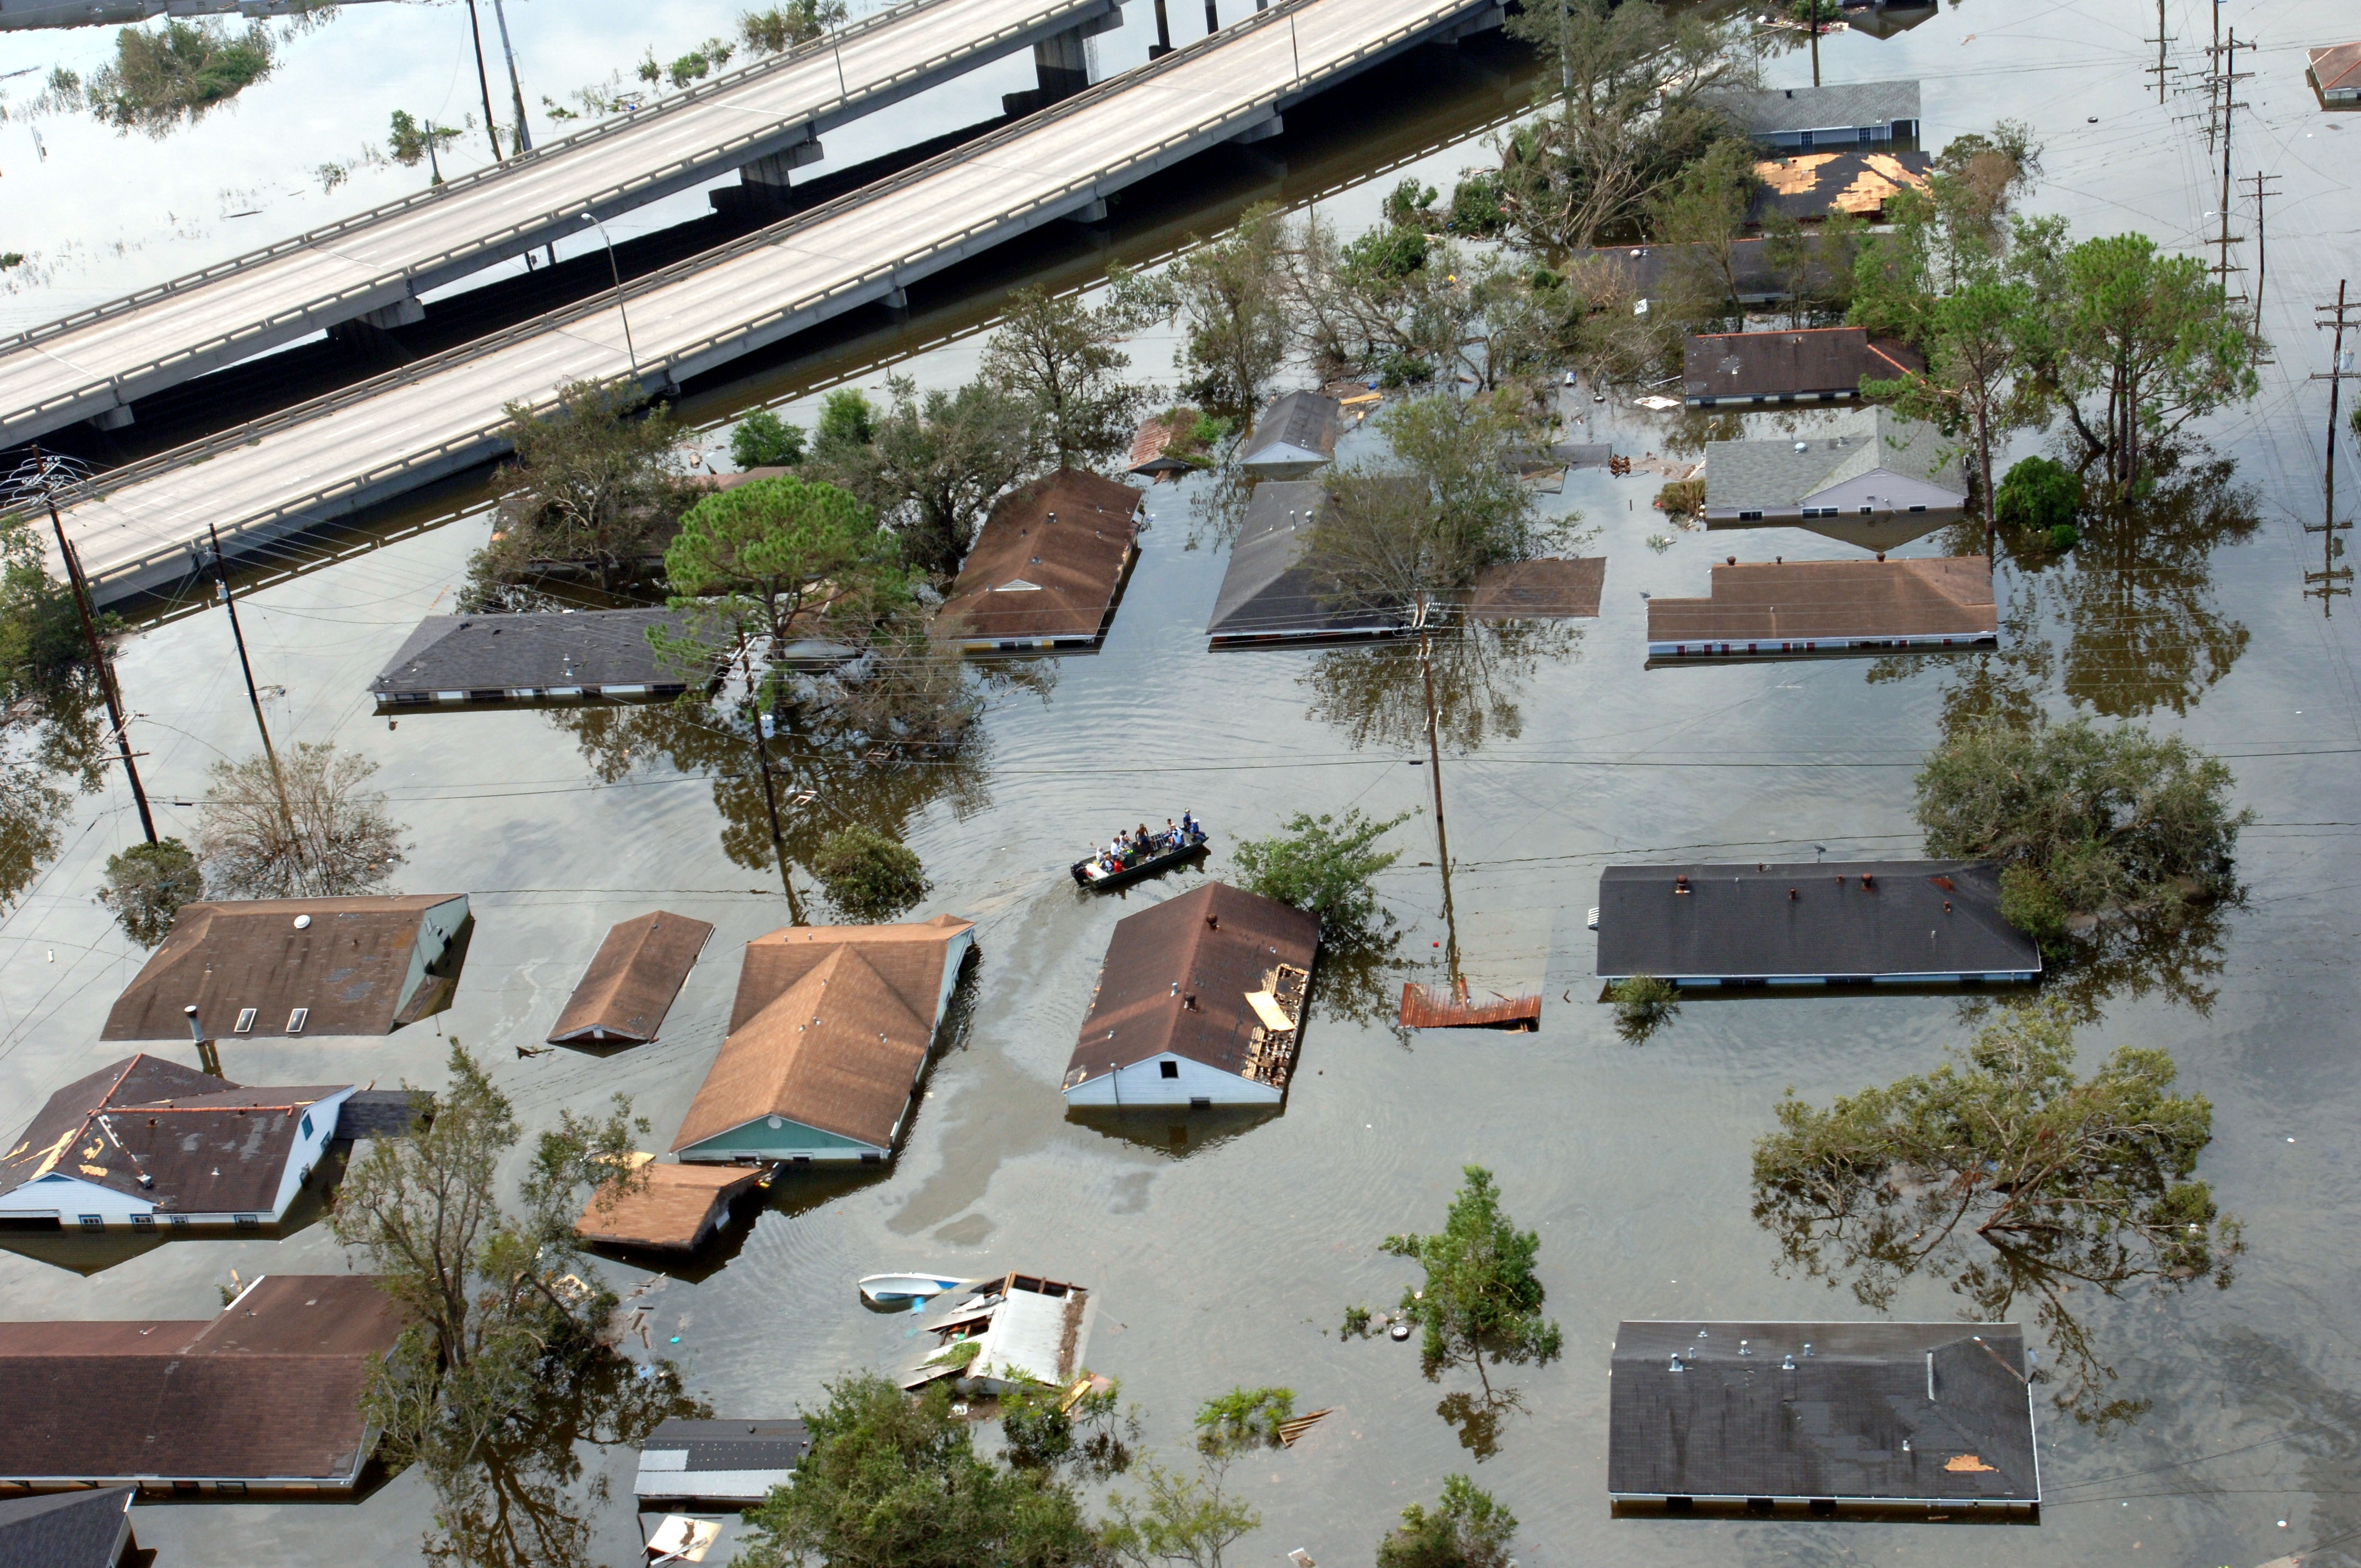 FEMA - 15020 - Photograph by Jocelyn Augustino taken on 08-30-2005 in Louisiana